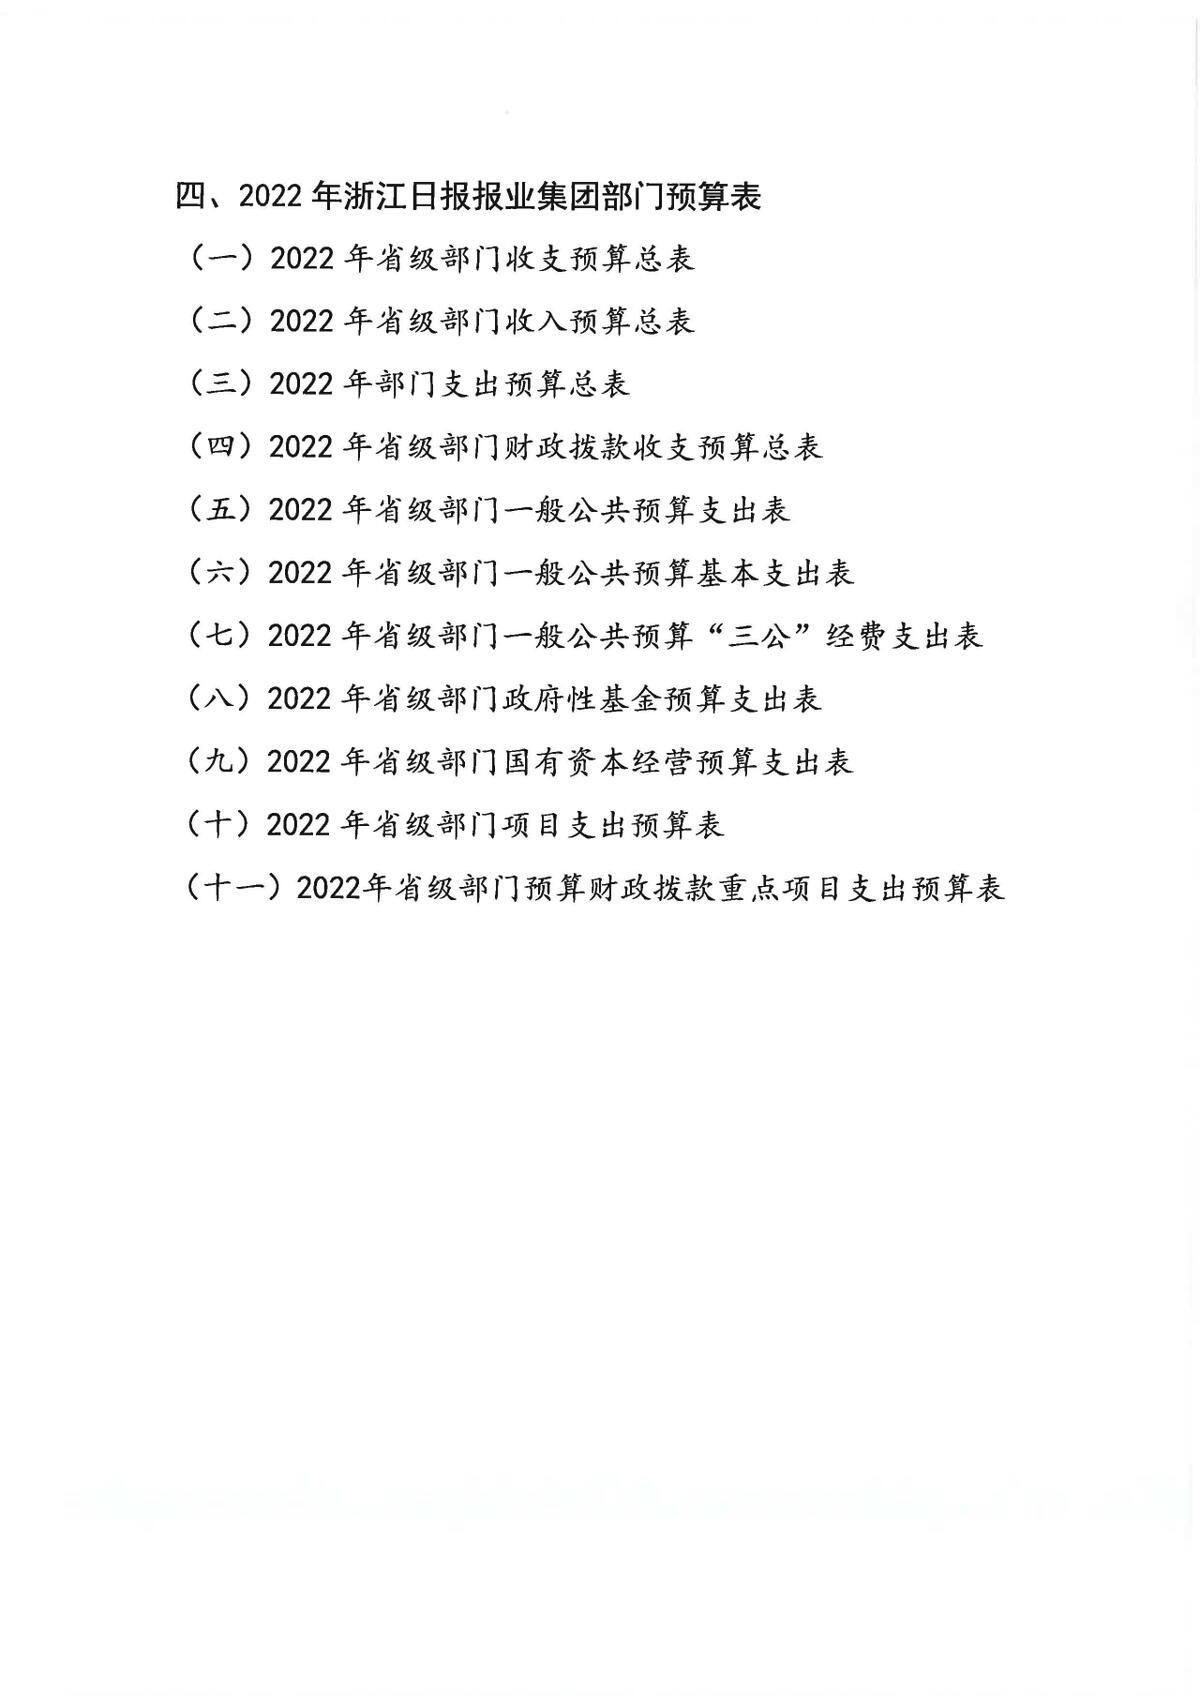 浙江日报报业集团2022年部门预算公开_页面_03.jpg